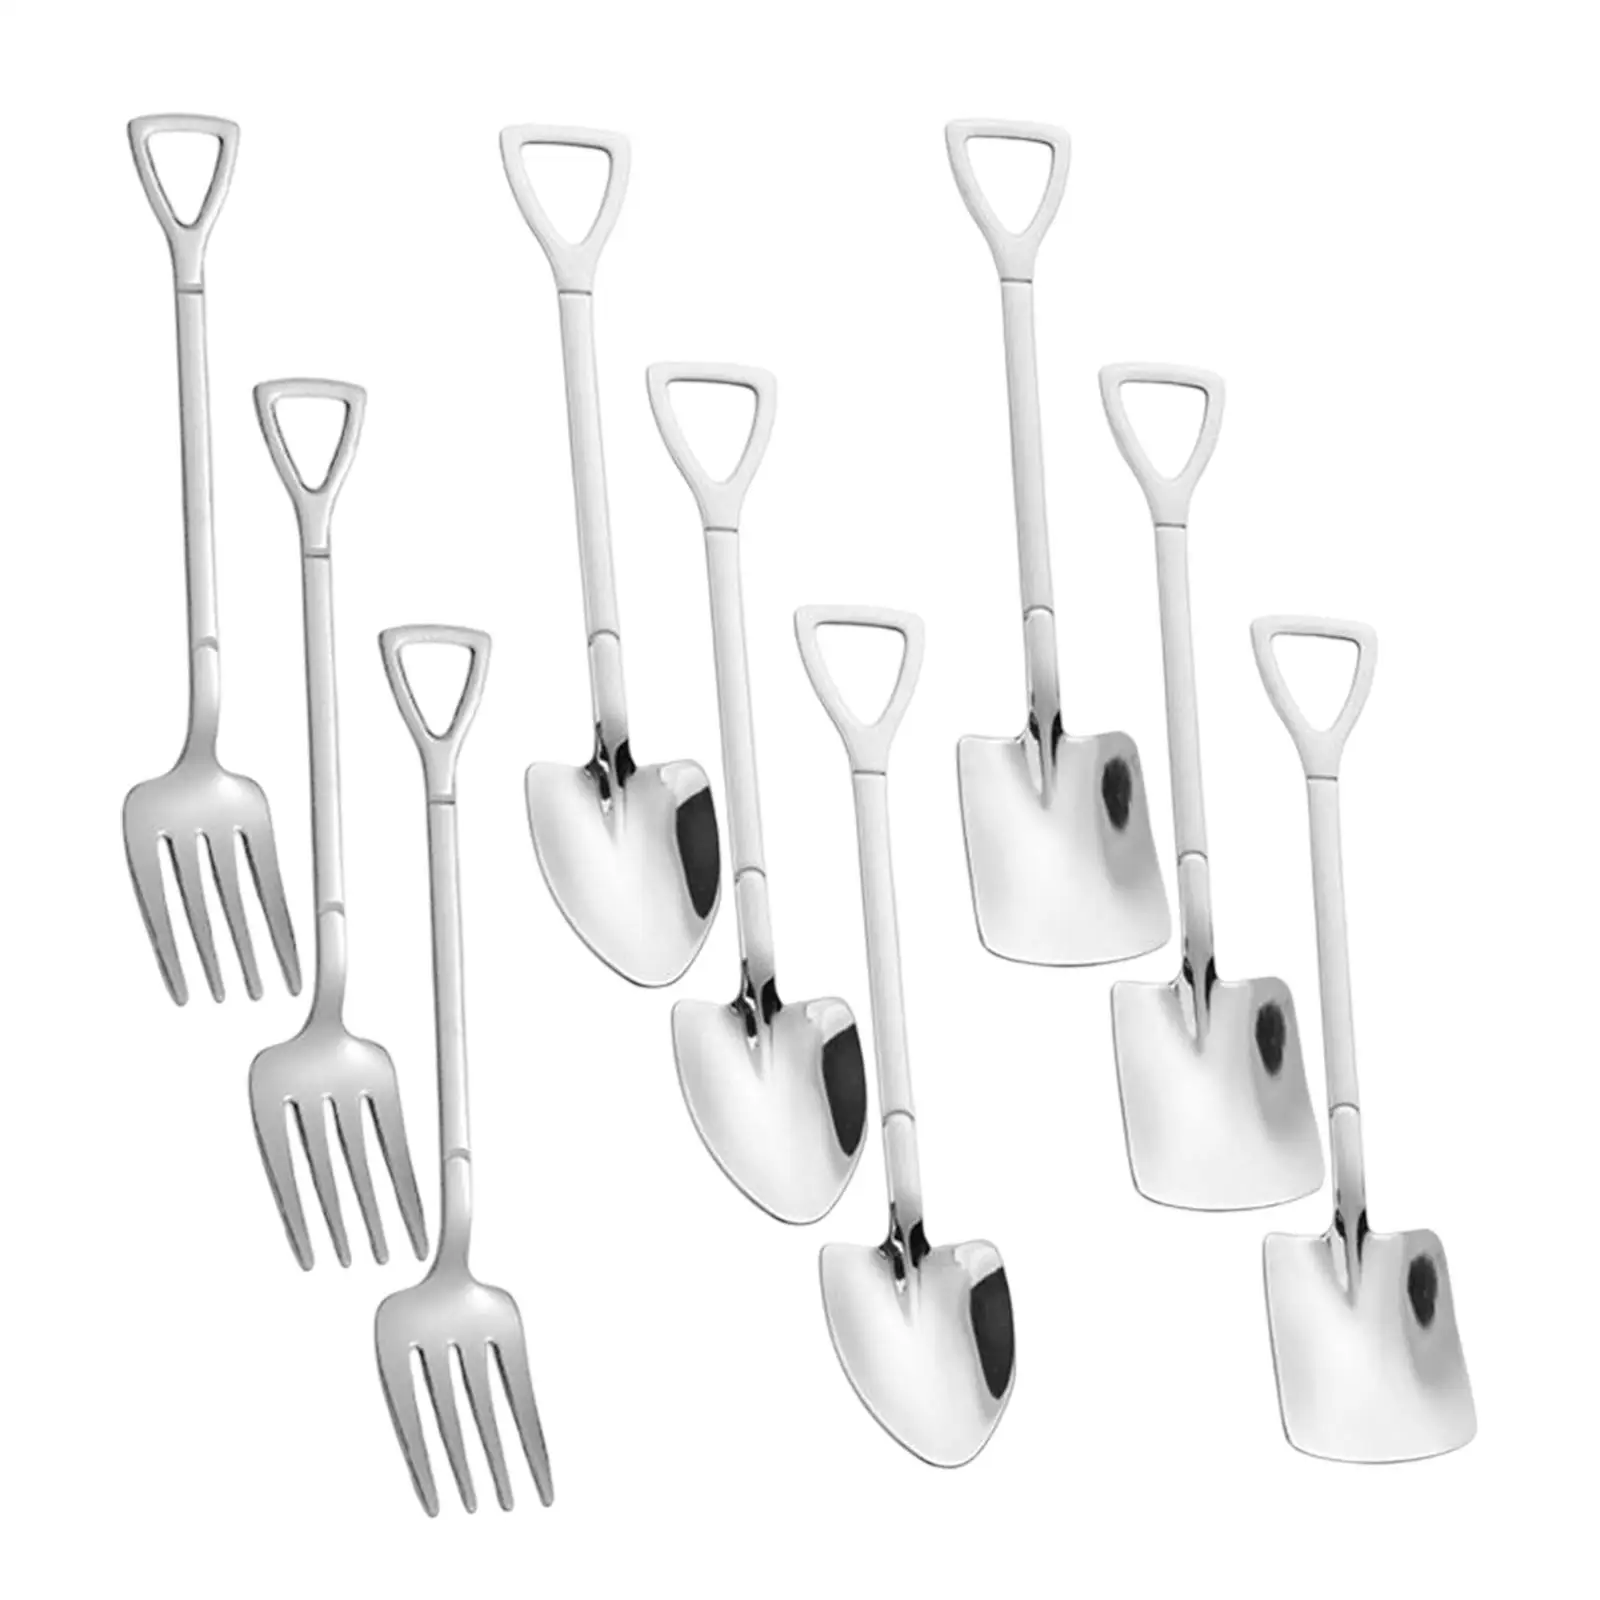 9x Cutlery Set Utensils Set Tableware Cutlery Spoons Tableware for Wedding